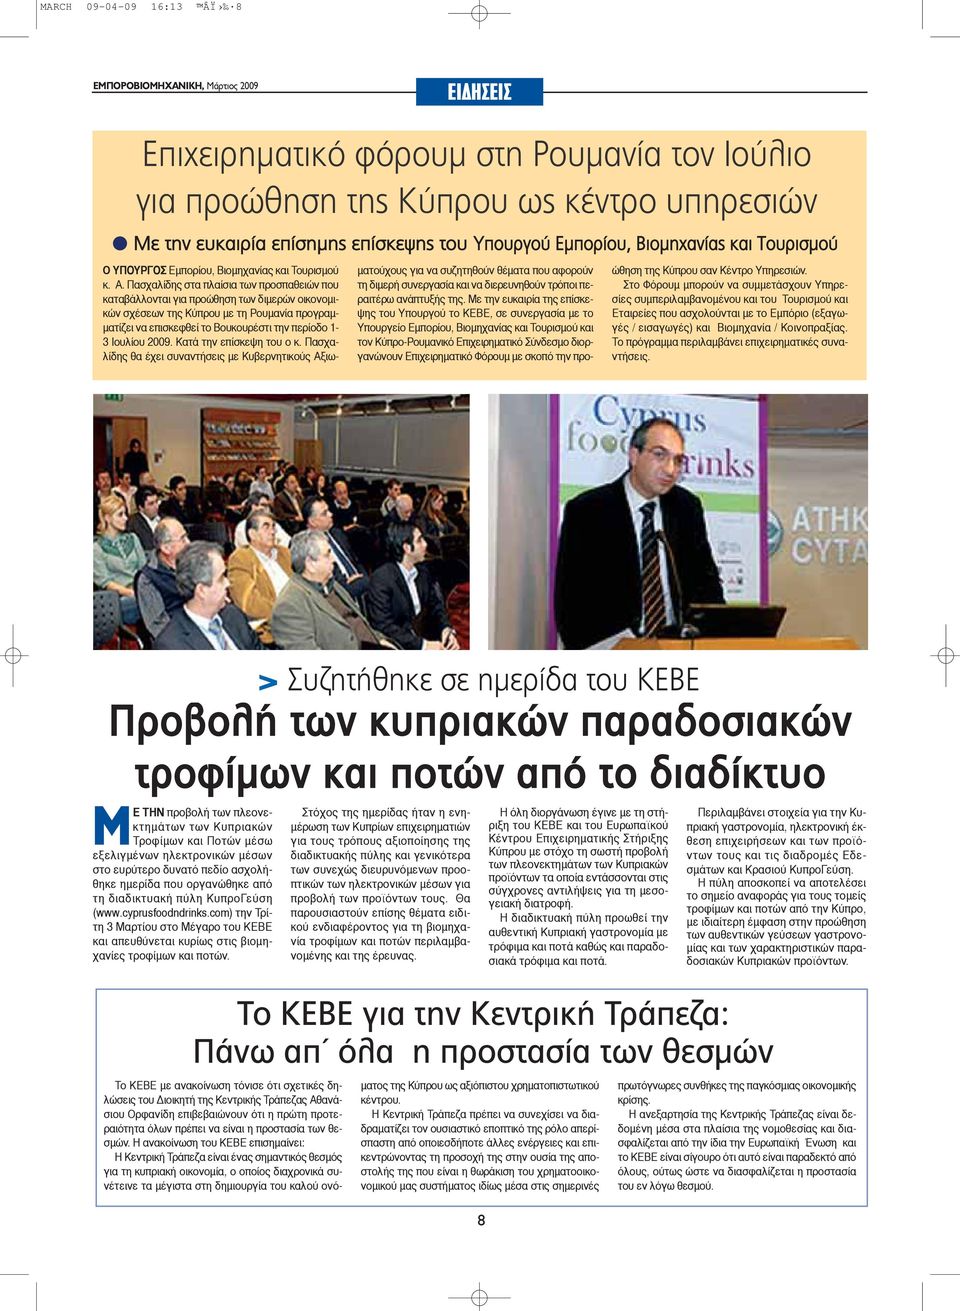 Πασχαλίδης στα πλαίσια των προσπαθειών που καταβάλλονται για προώθηση των διμερών οικονομικών σχέσεων της Κύπρου με τη Ρουμανία προγραμματίζει να επισκεφθεί το Βουκουρέστι την περίοδο 1-3 Ιουλίου